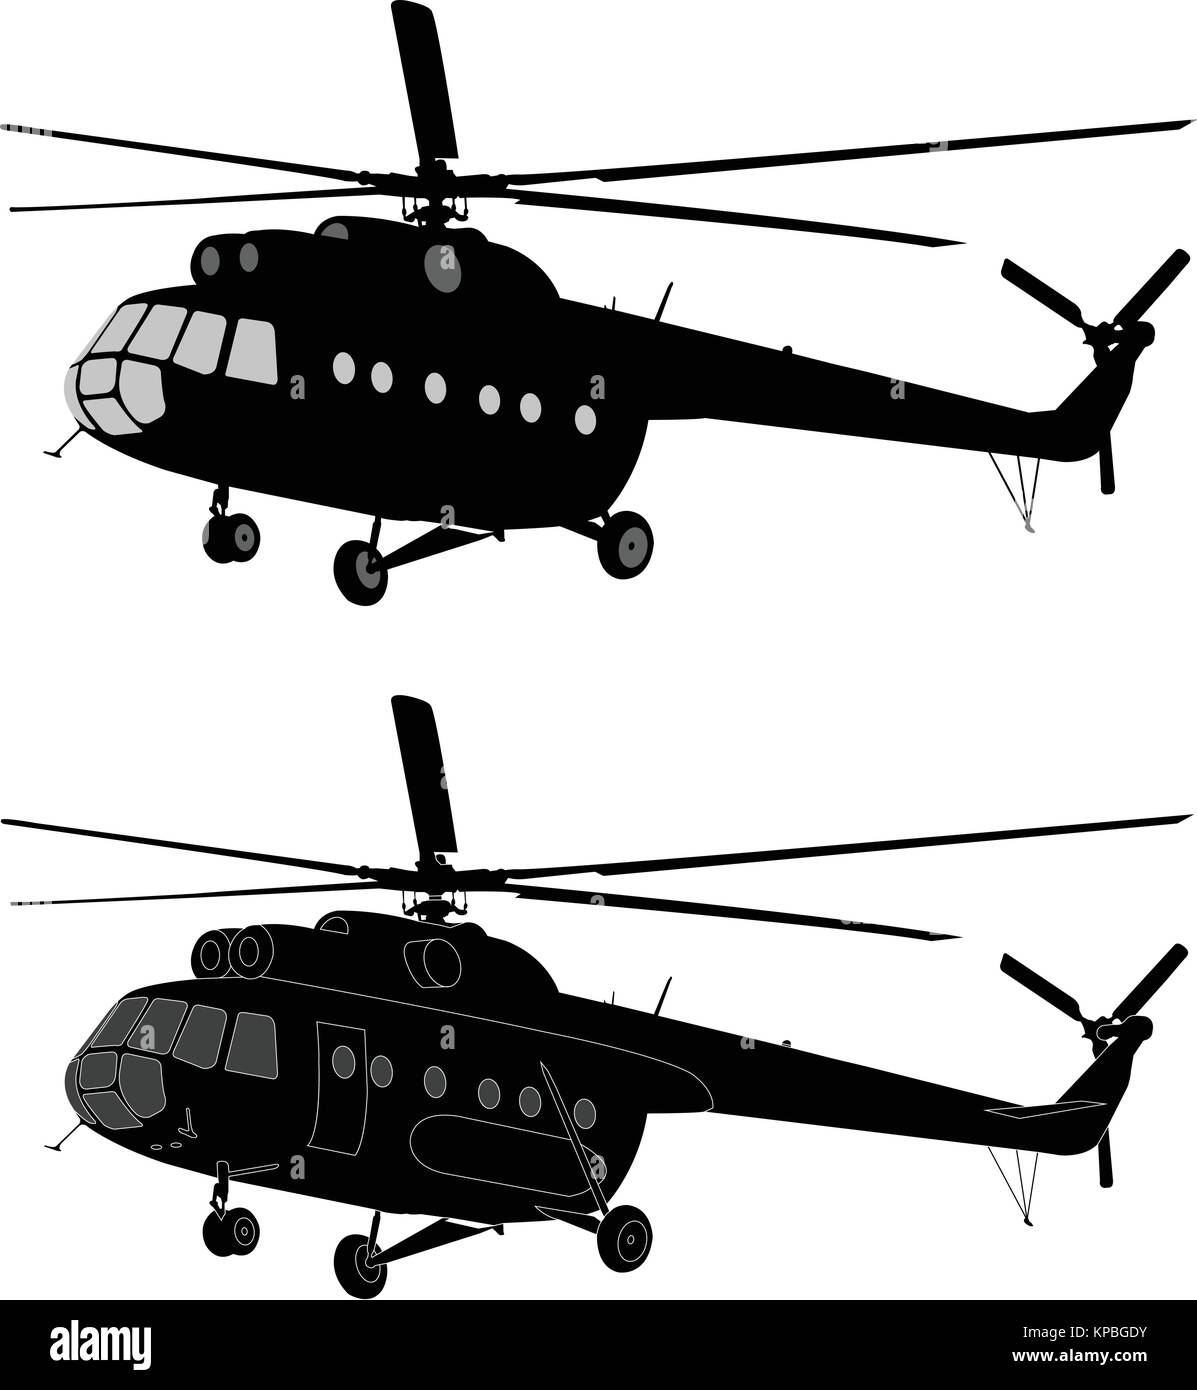 Silhouette d'hélicoptère MI-8 russe - vector Illustration de Vecteur